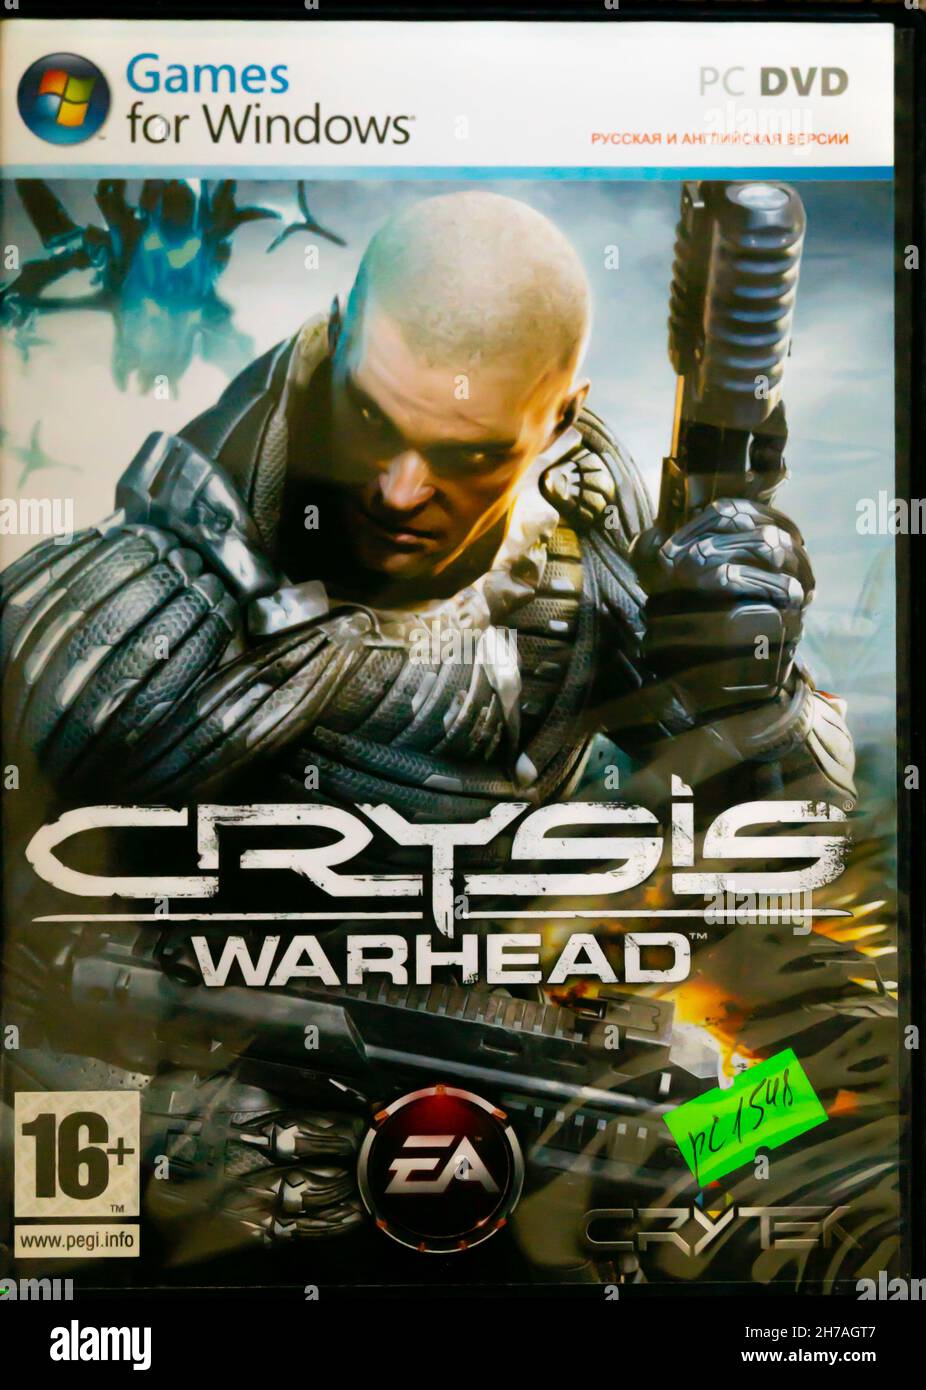 Video Game, shooter, pour Windows PC DVD couverture à partir des années 2000: Crysis Warhead développé par Crytek, sorti en 2008 Banque D'Images